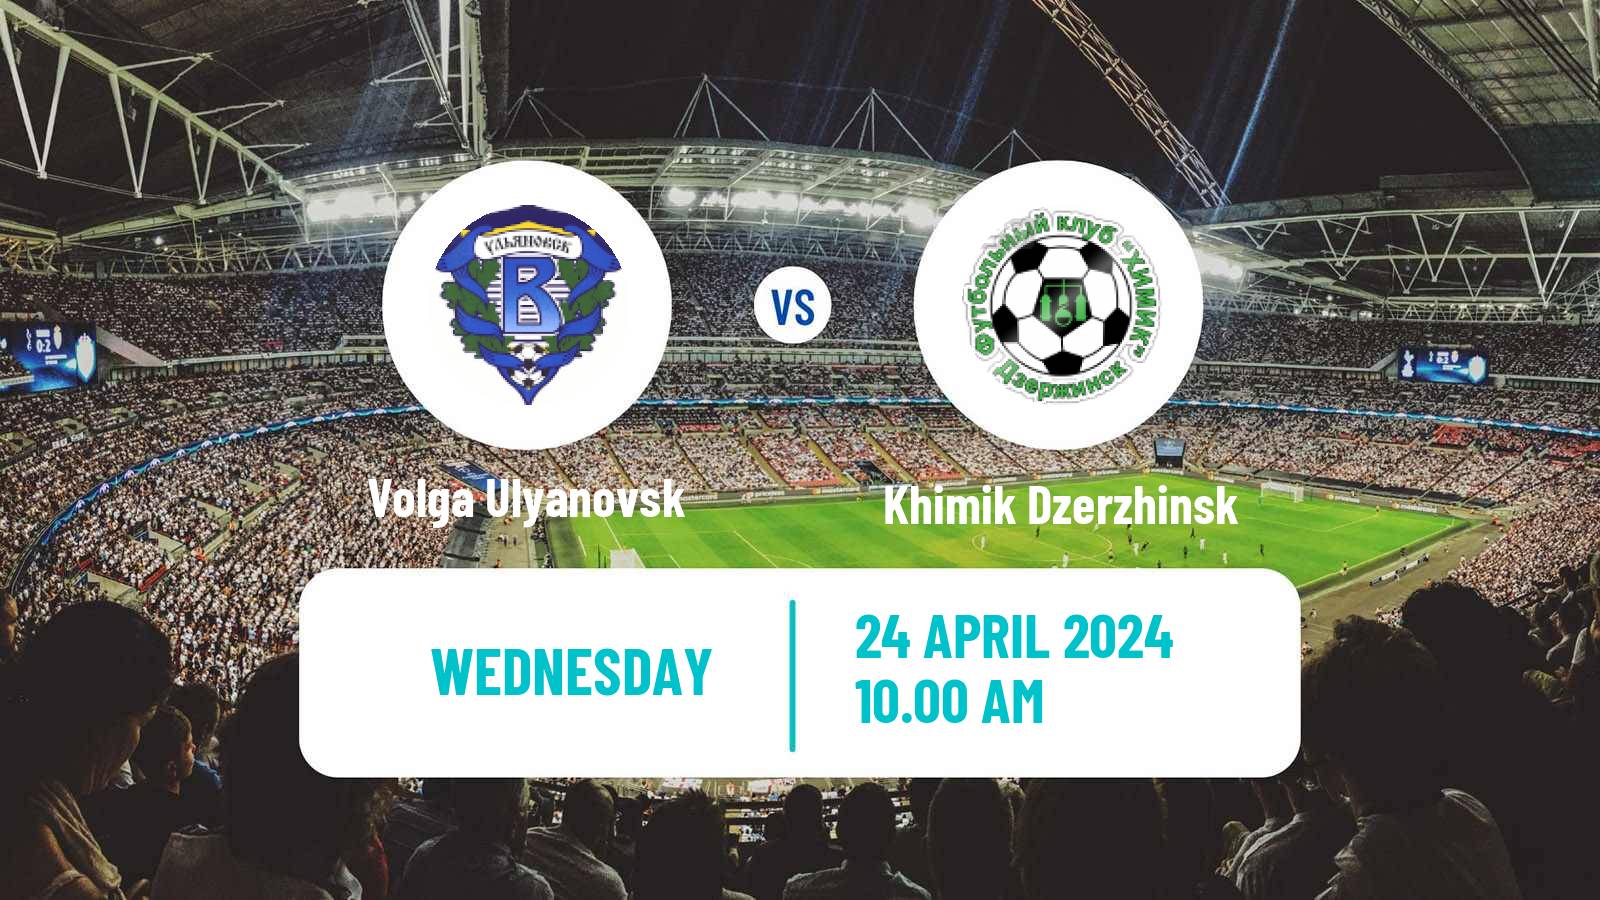 Soccer Russian FNL 2 Division A Silver Volga Ulyanovsk - Khimik Dzerzhinsk